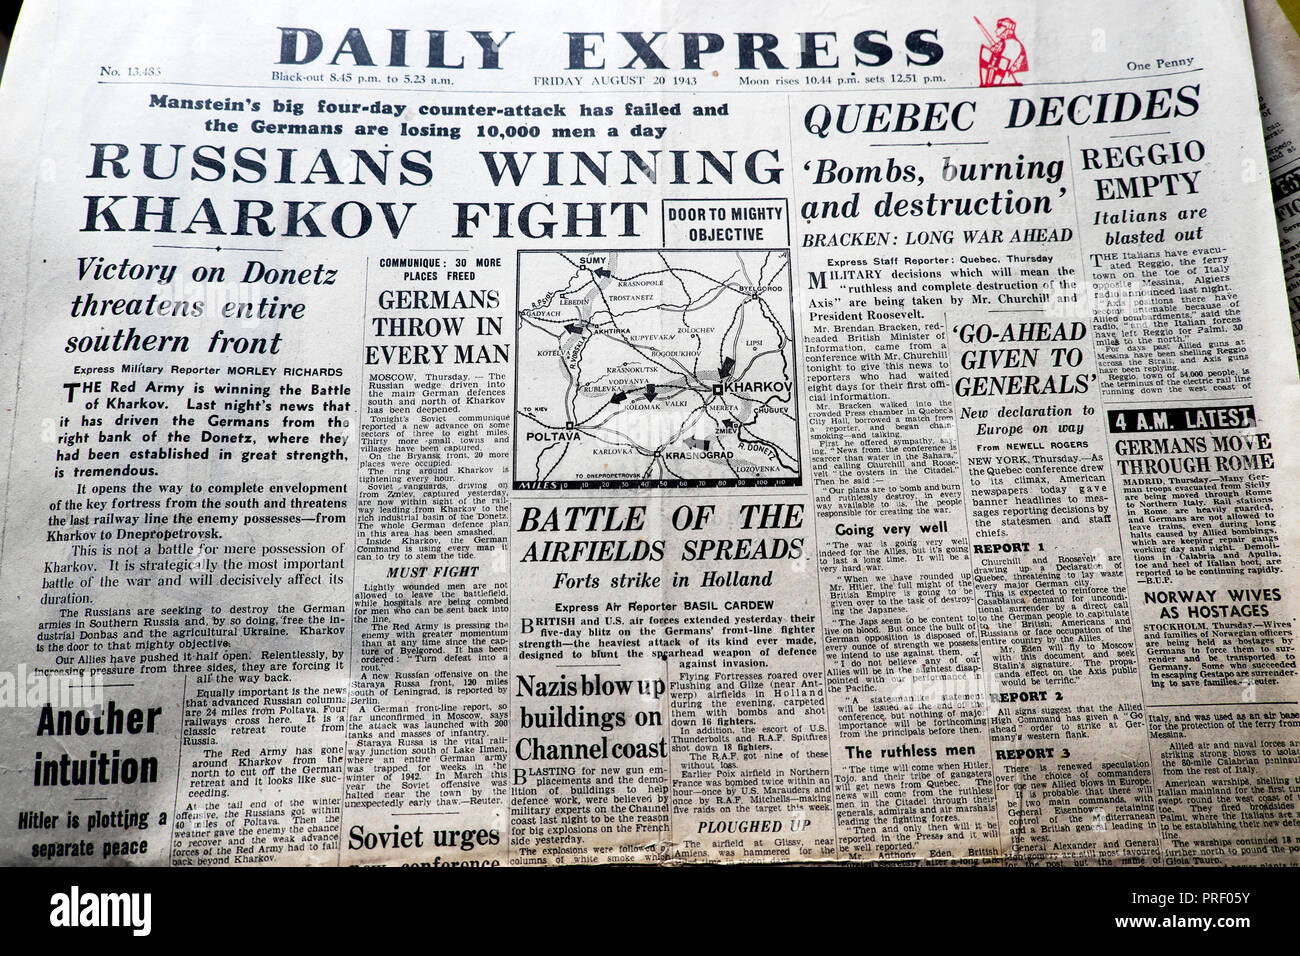 'Russes' lutte Kharkov gagnante la une des journaux du journal Daily Express 20 Août 1943 London UK Archives historiques Banque D'Images